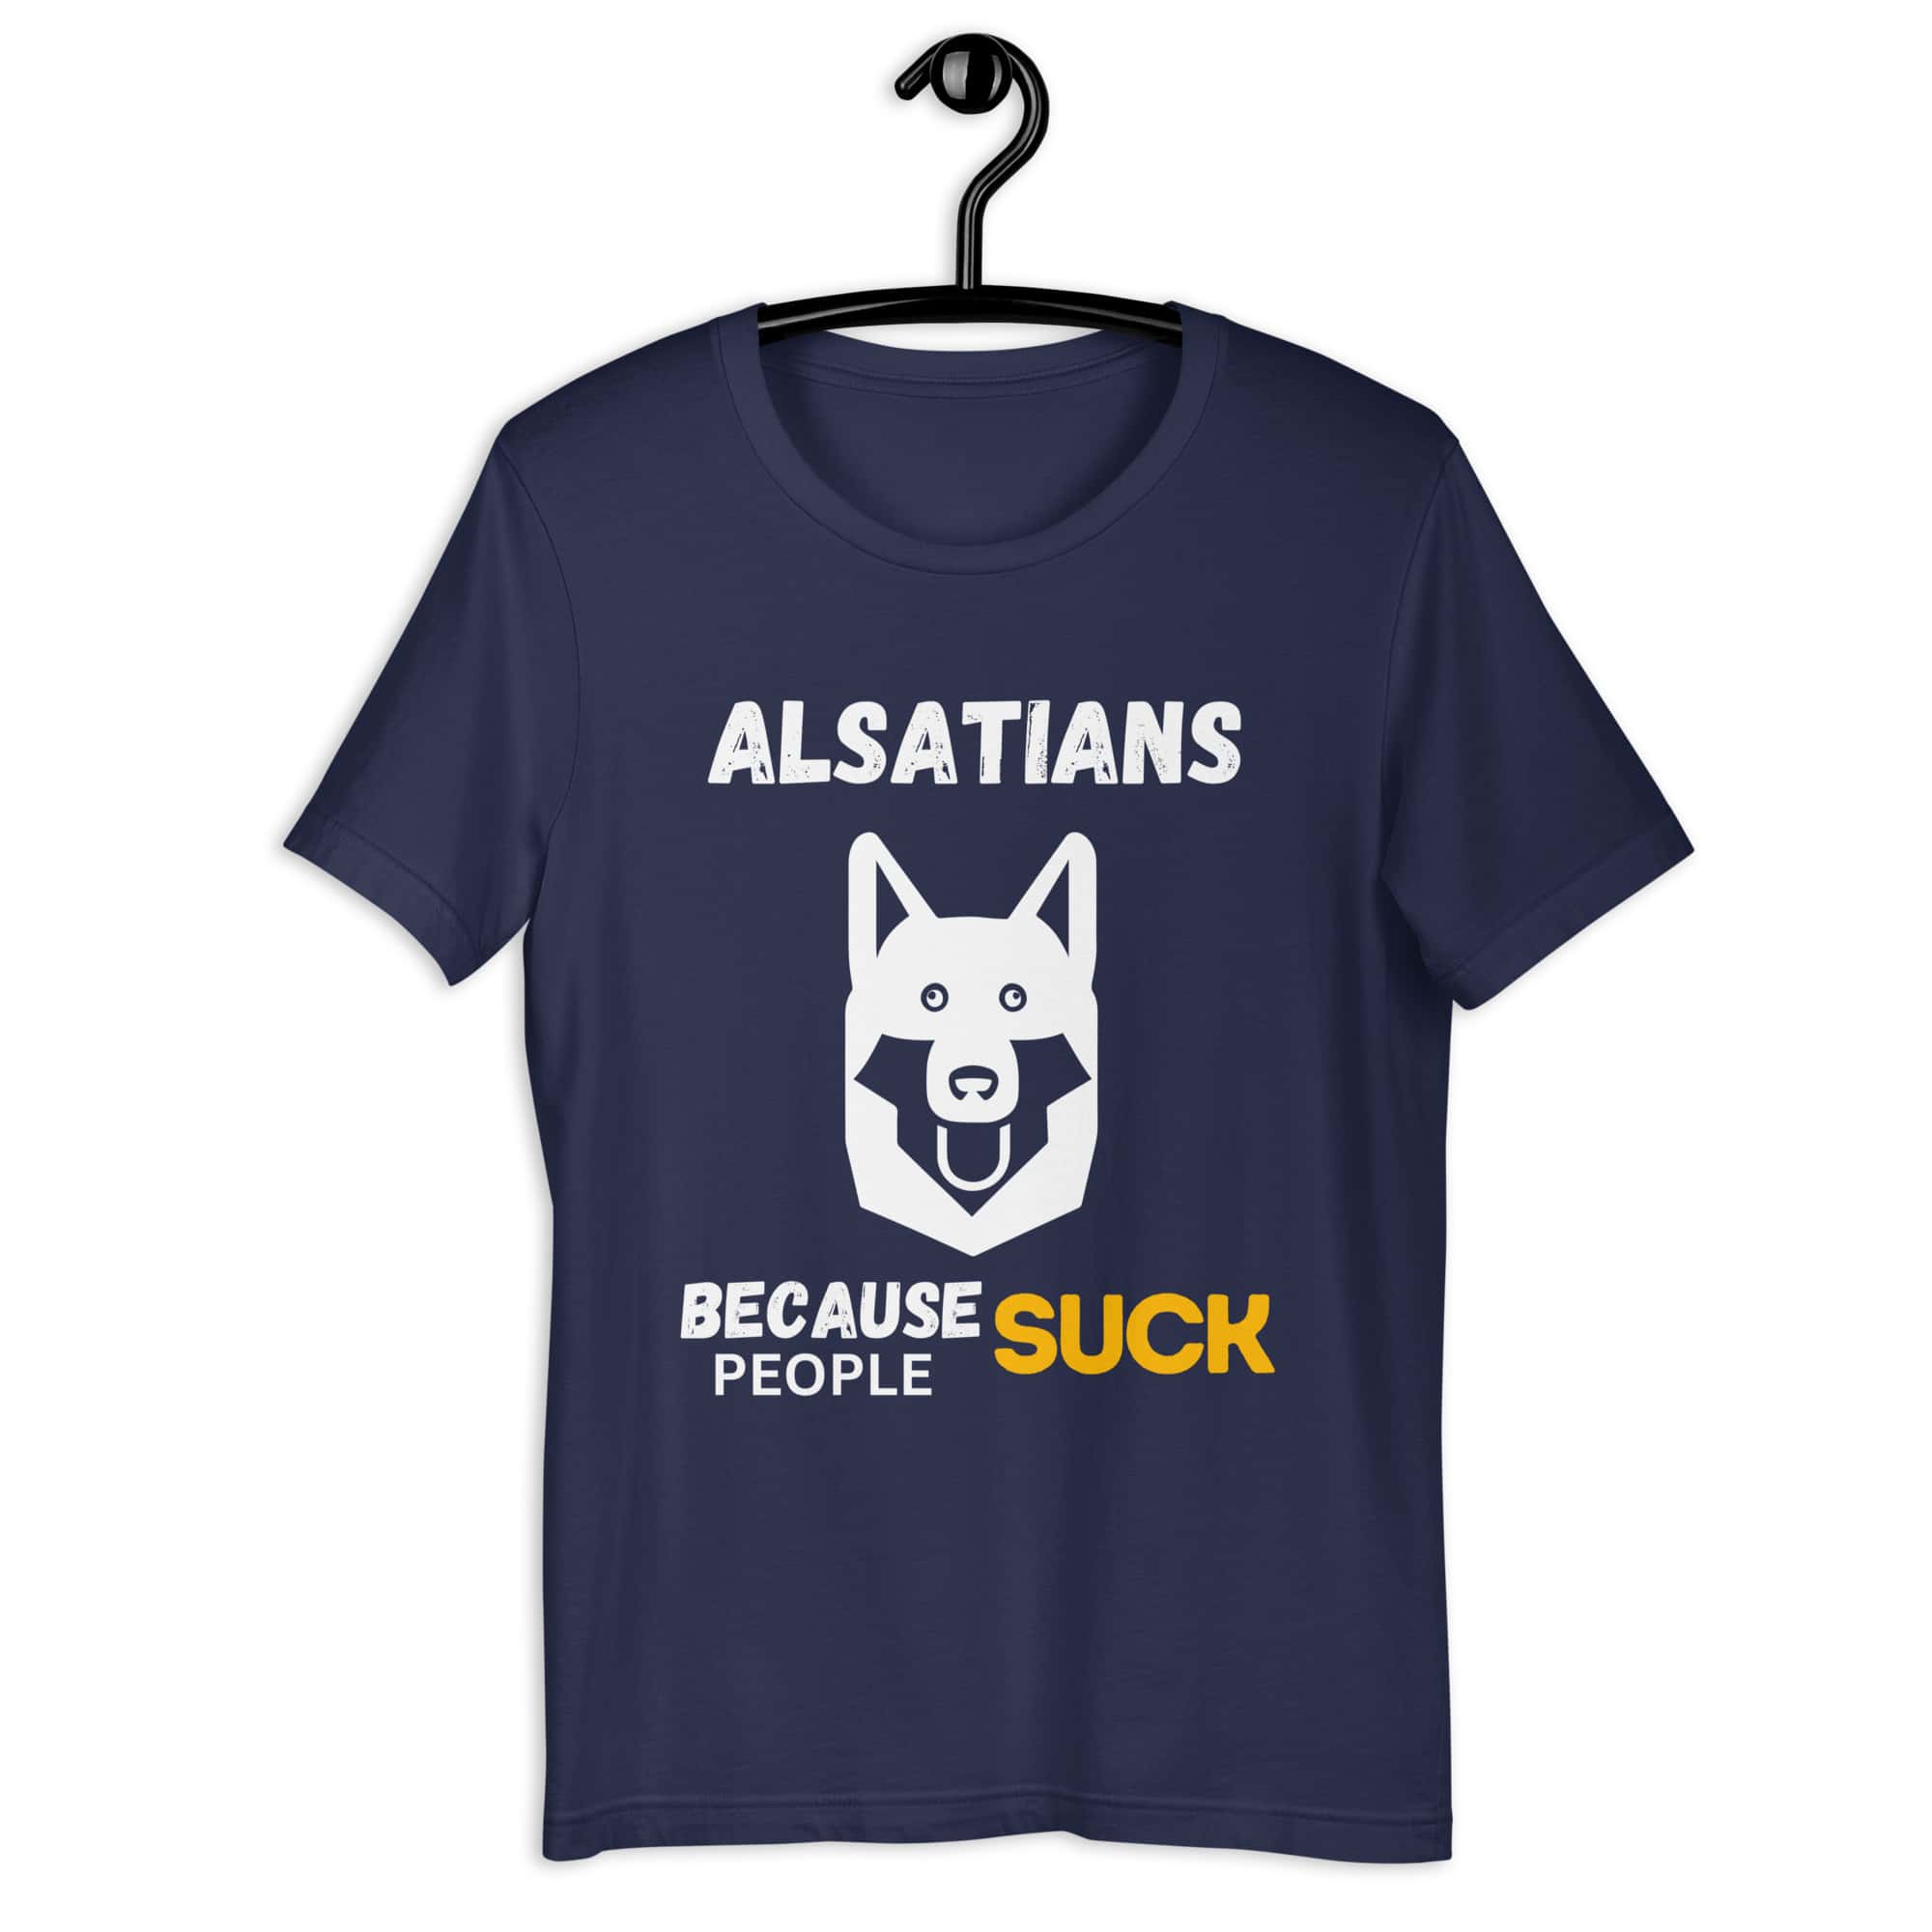 Alsatians Because People Suck Unisex T-Shirt navy